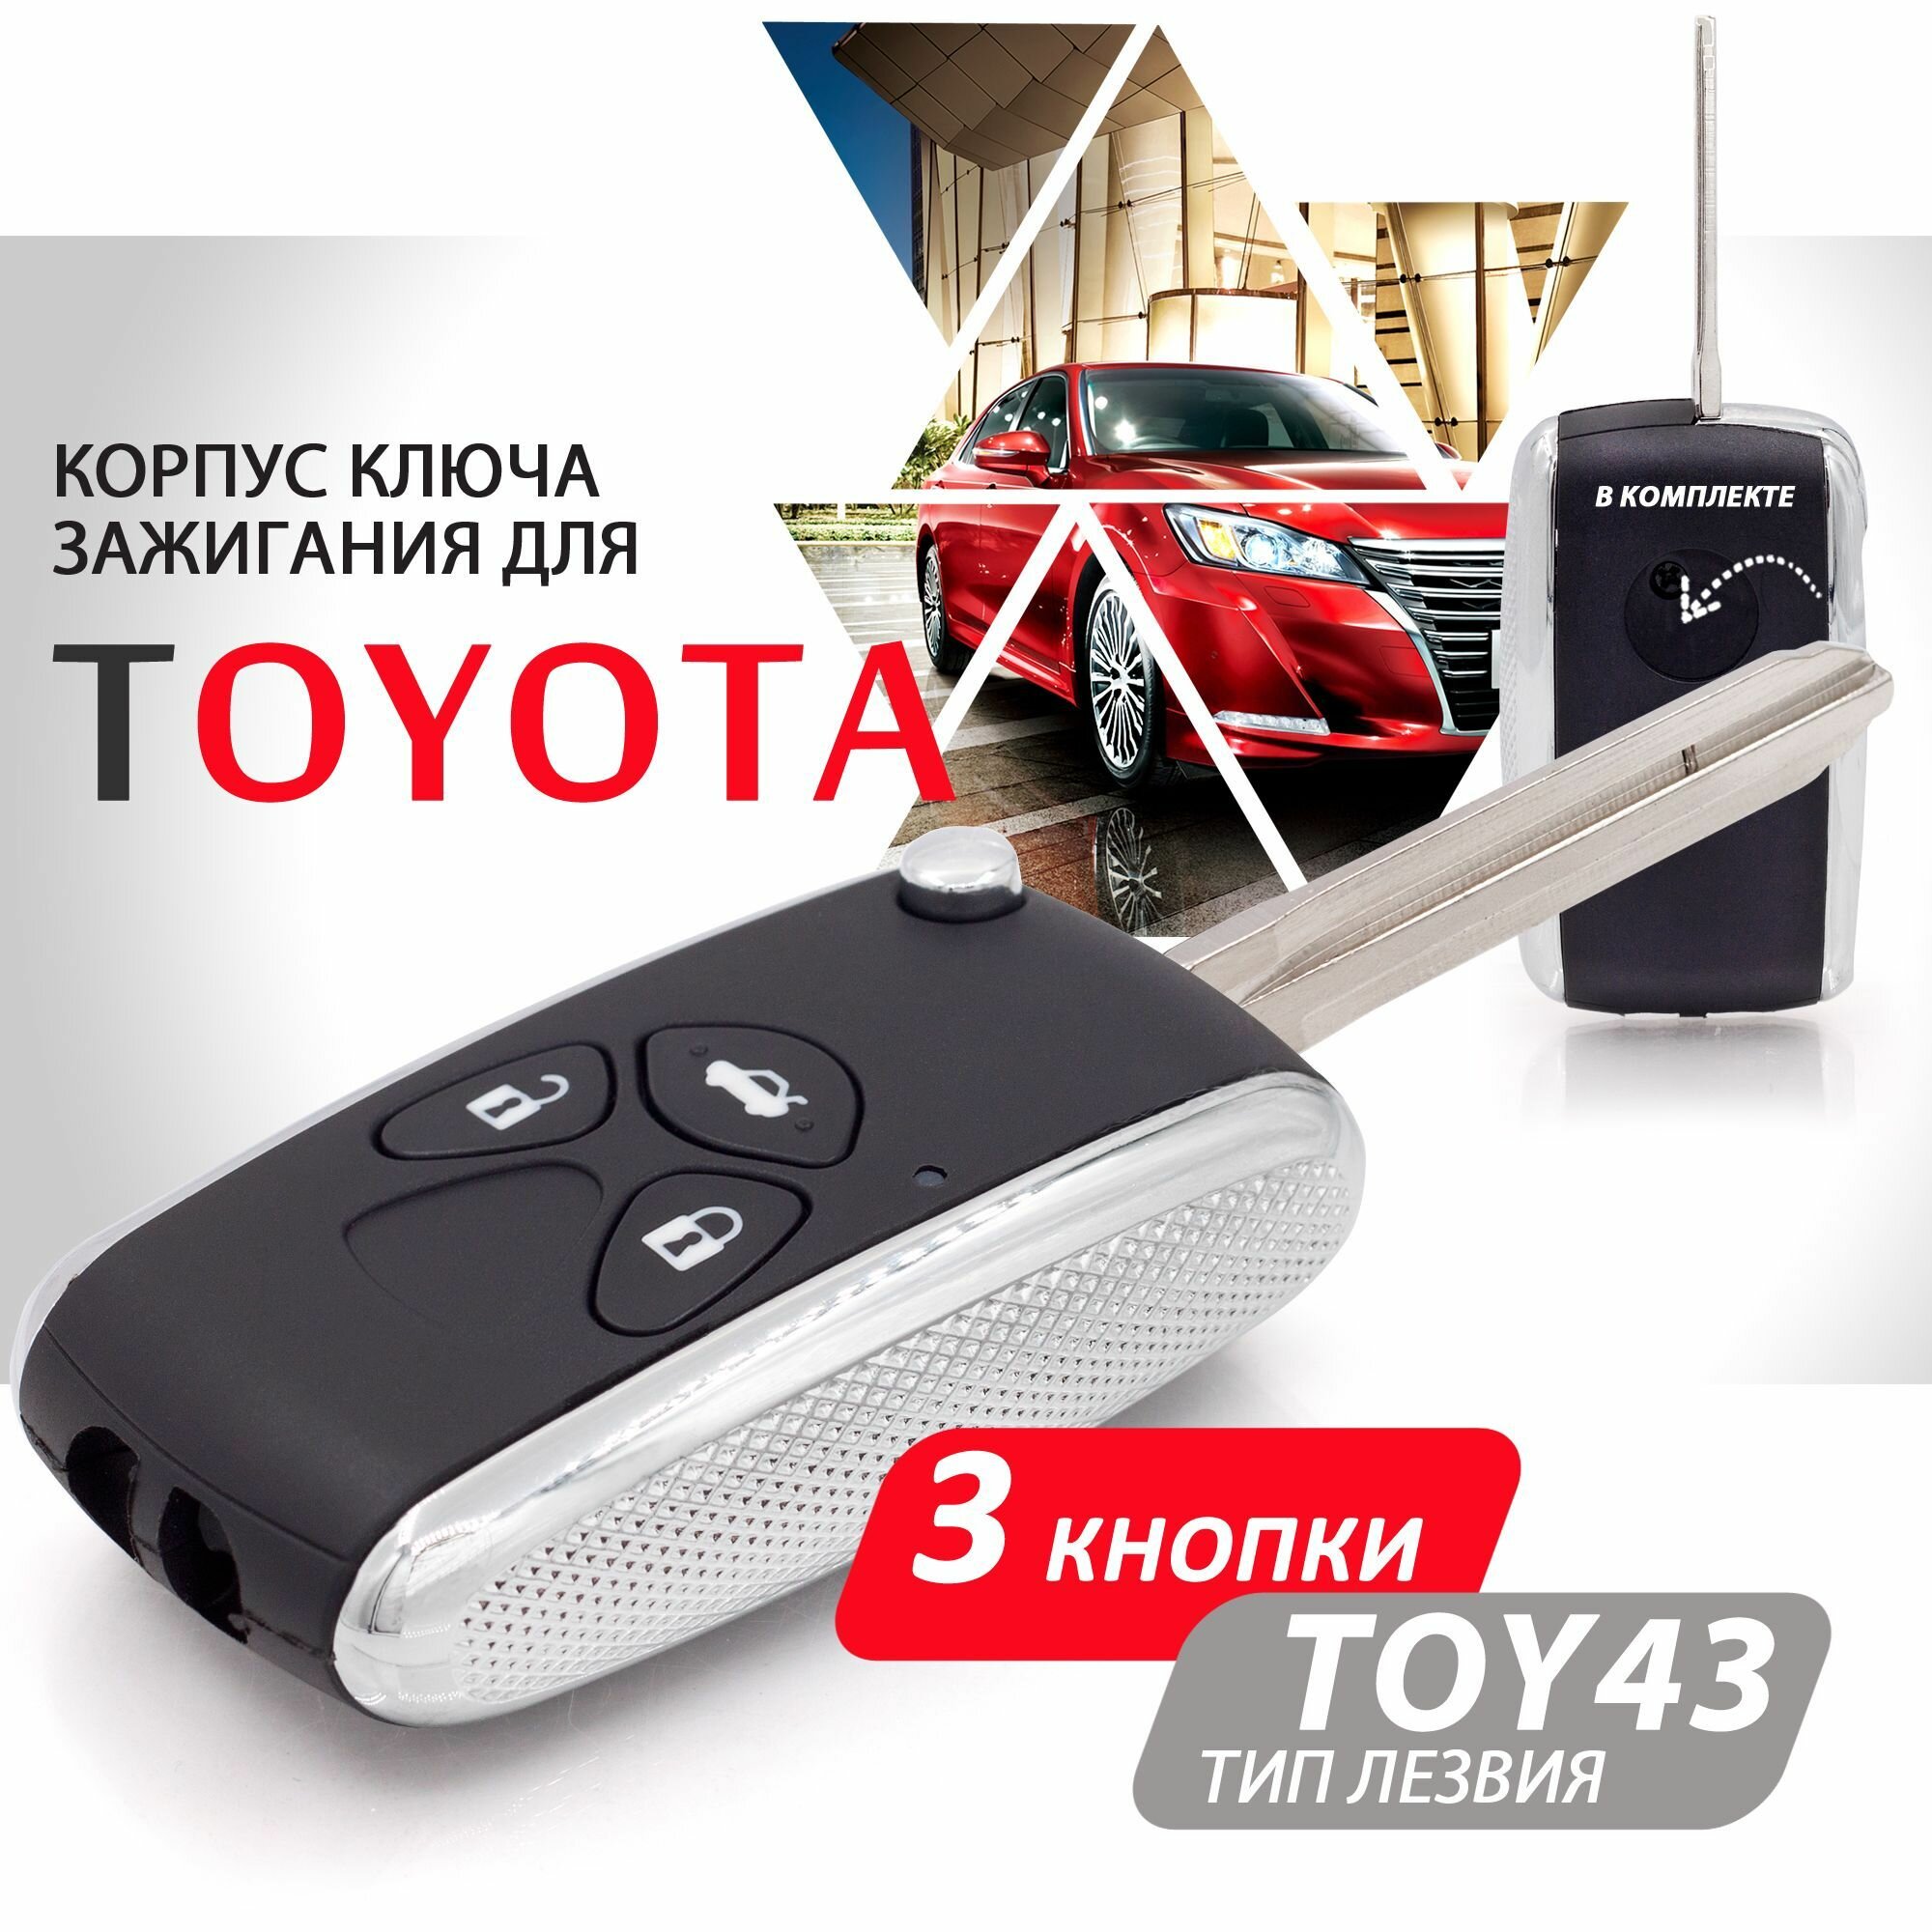 Корпус ключа зажигания для Toyota (3 кнопки, выкидное лезвие TOY43) / Брелок автомобильный для Камри РАВ4 Королла